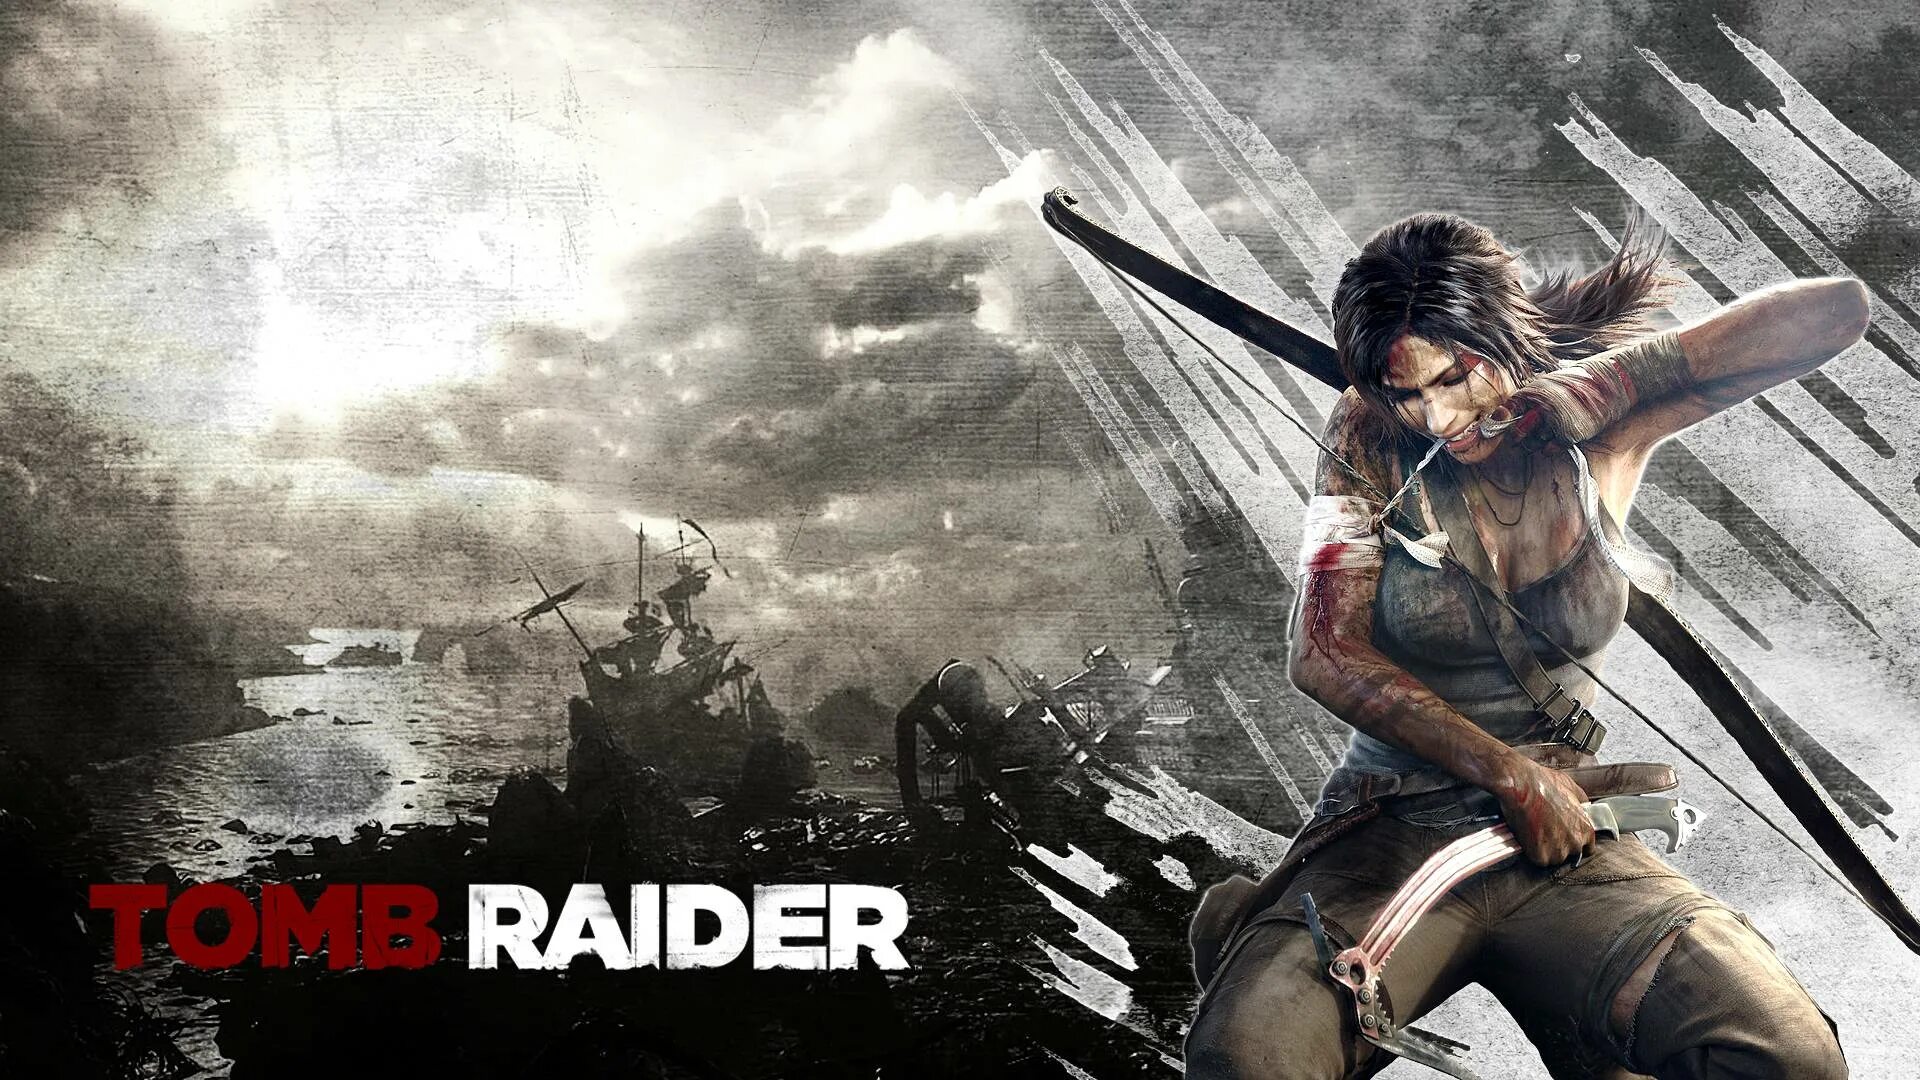 Томб Райдер 2013 обложка. Tomb Raider Definitive Edition. Tomb Raider 2015 обложка. Tomb Raider 2013 Сэмми. Tomb raider прохождение часть